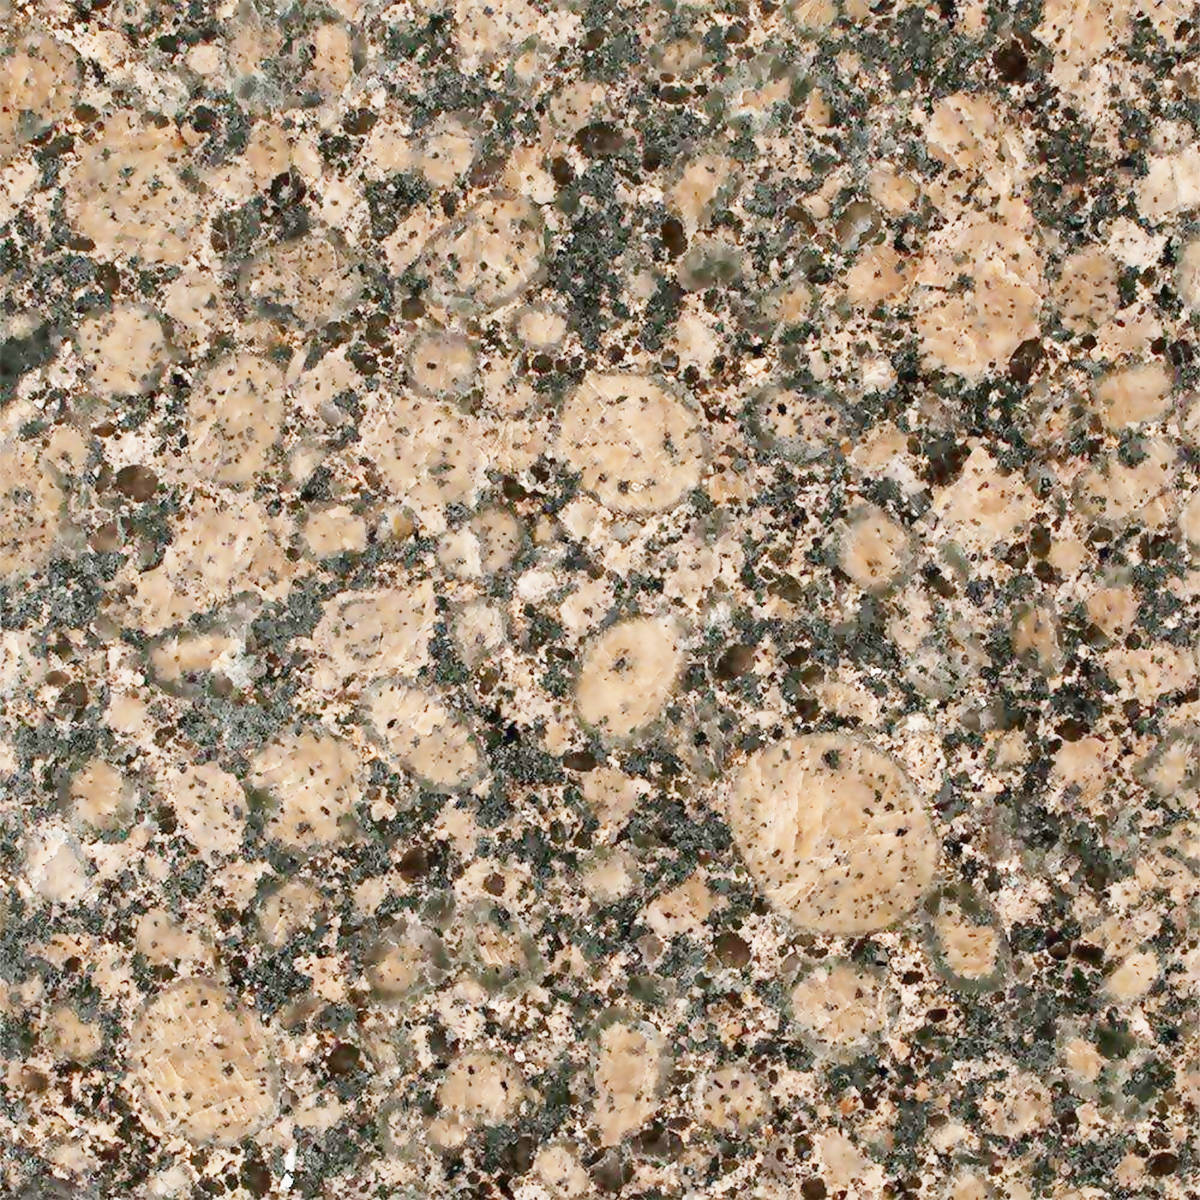 BALTIC BROWN GRANITE,Granite,Work-Tops,www.work-tops.com